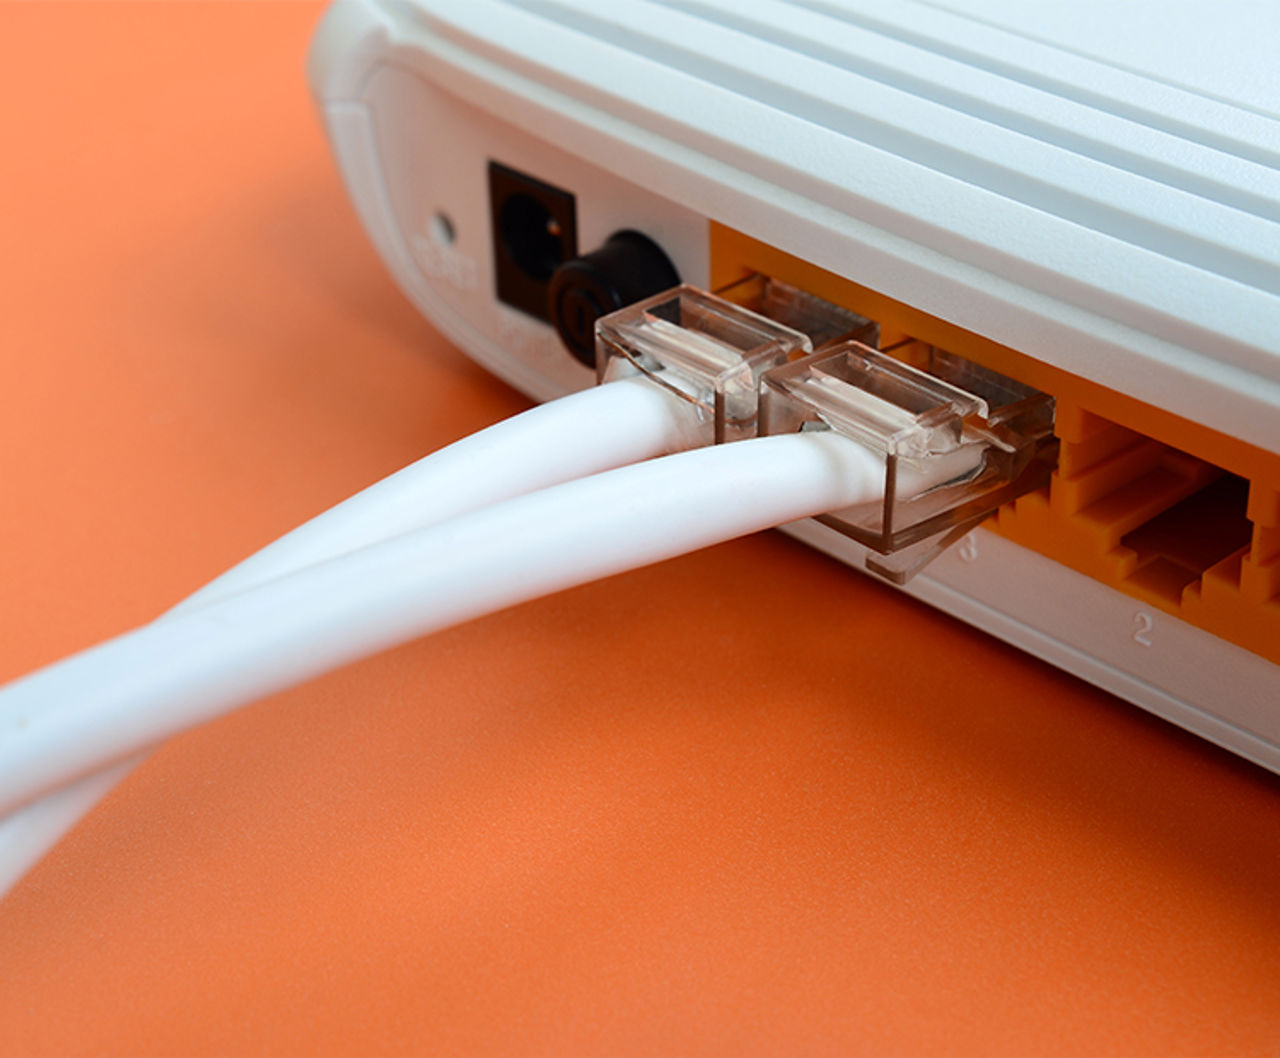 Das Bild zeigt einen Router mit eingesteckten Kabeln